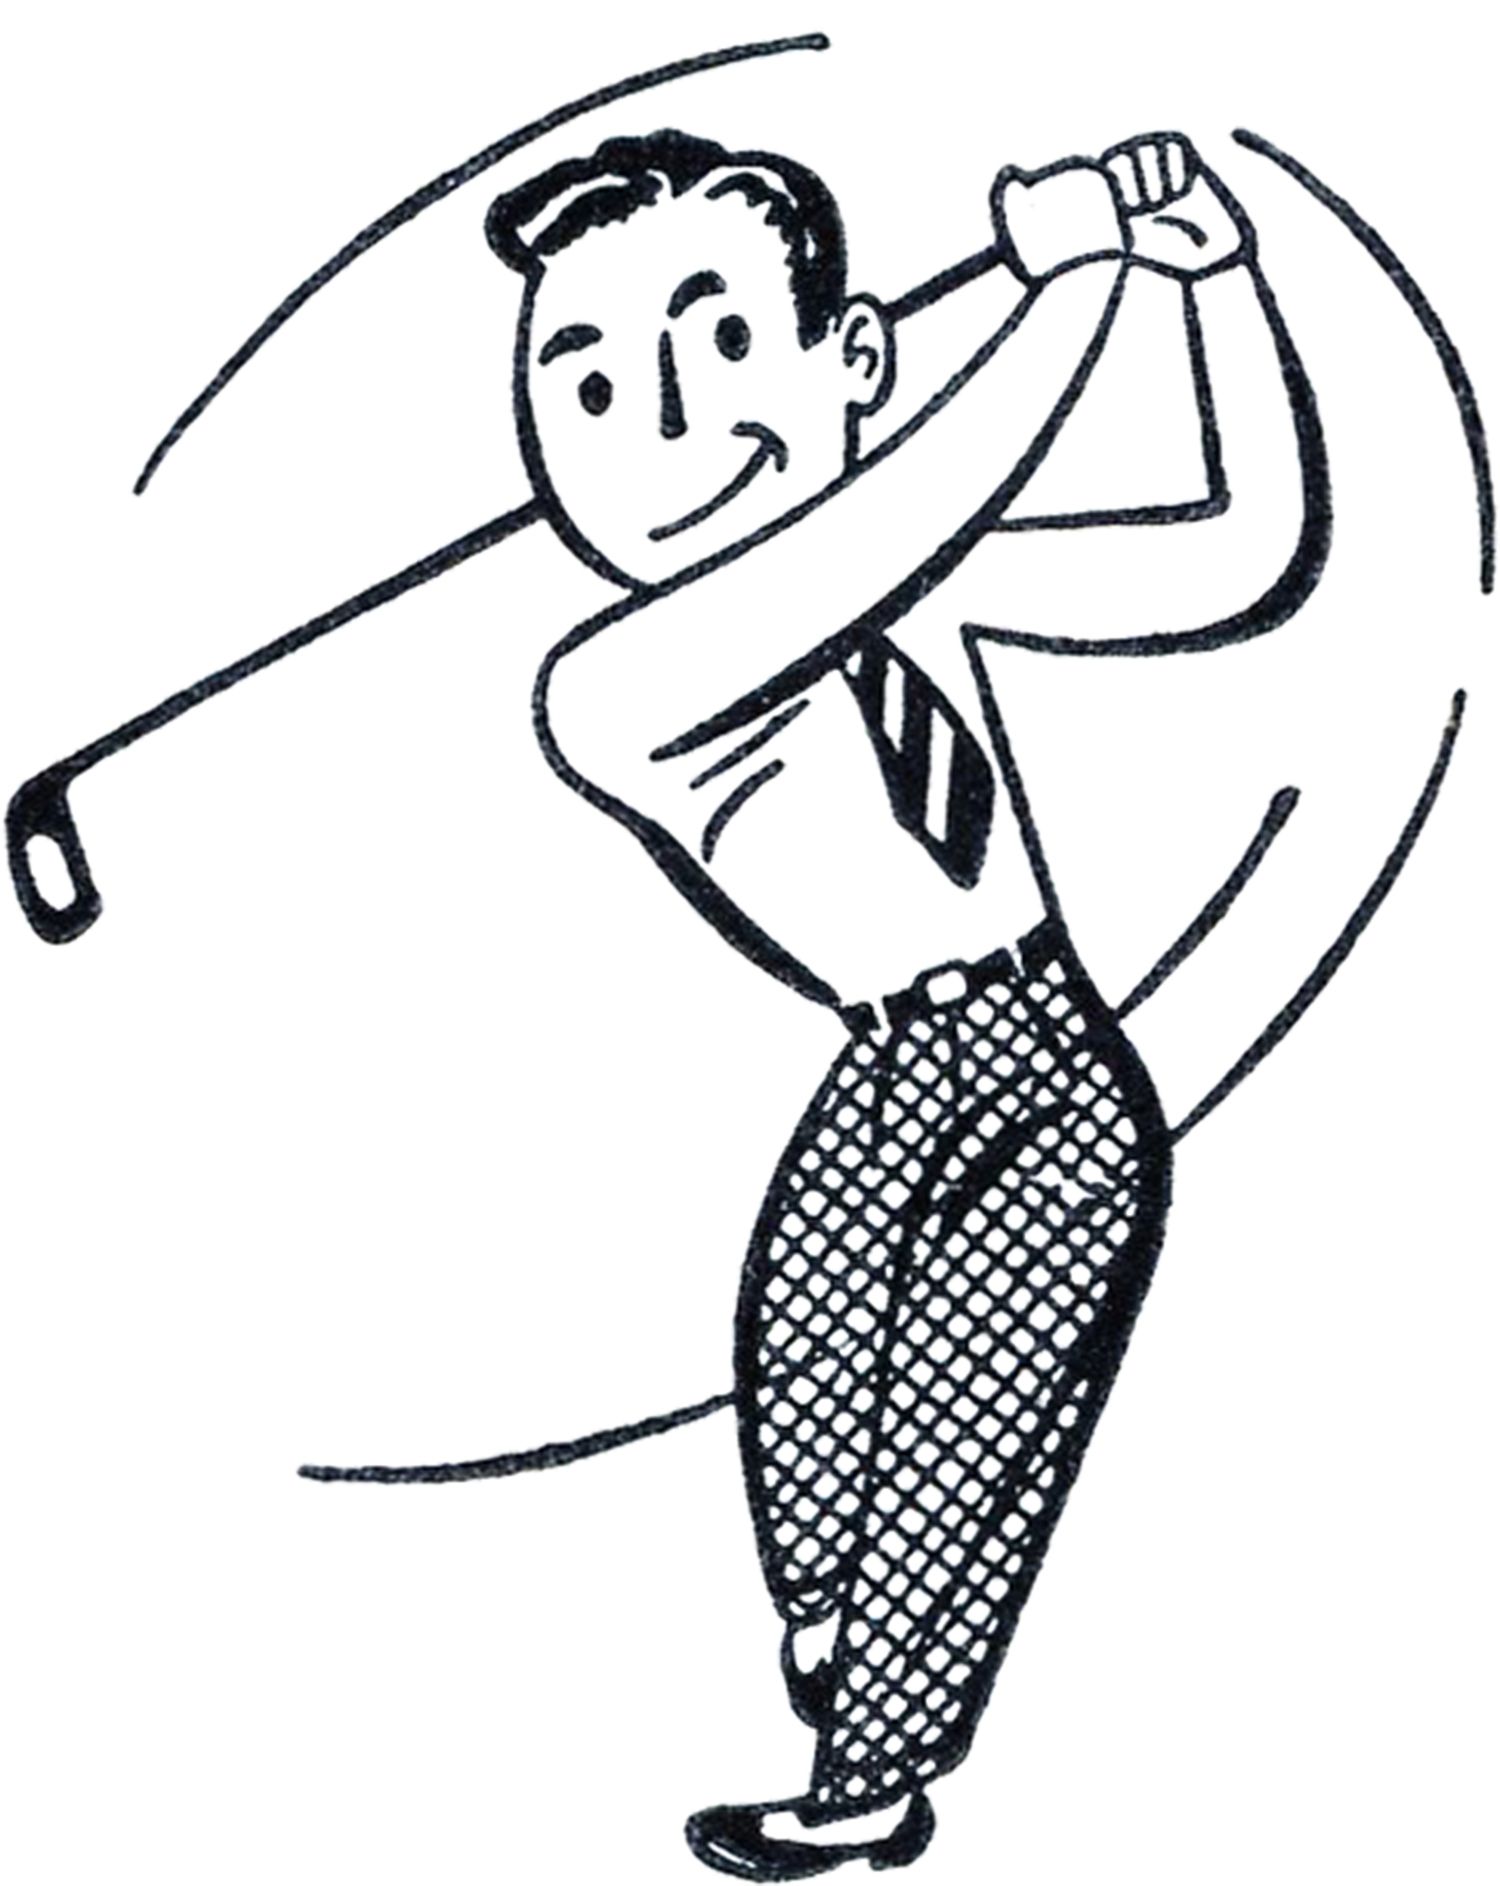 Retro Golf Clip Art - Funny | Clip art, Golf and Svg file